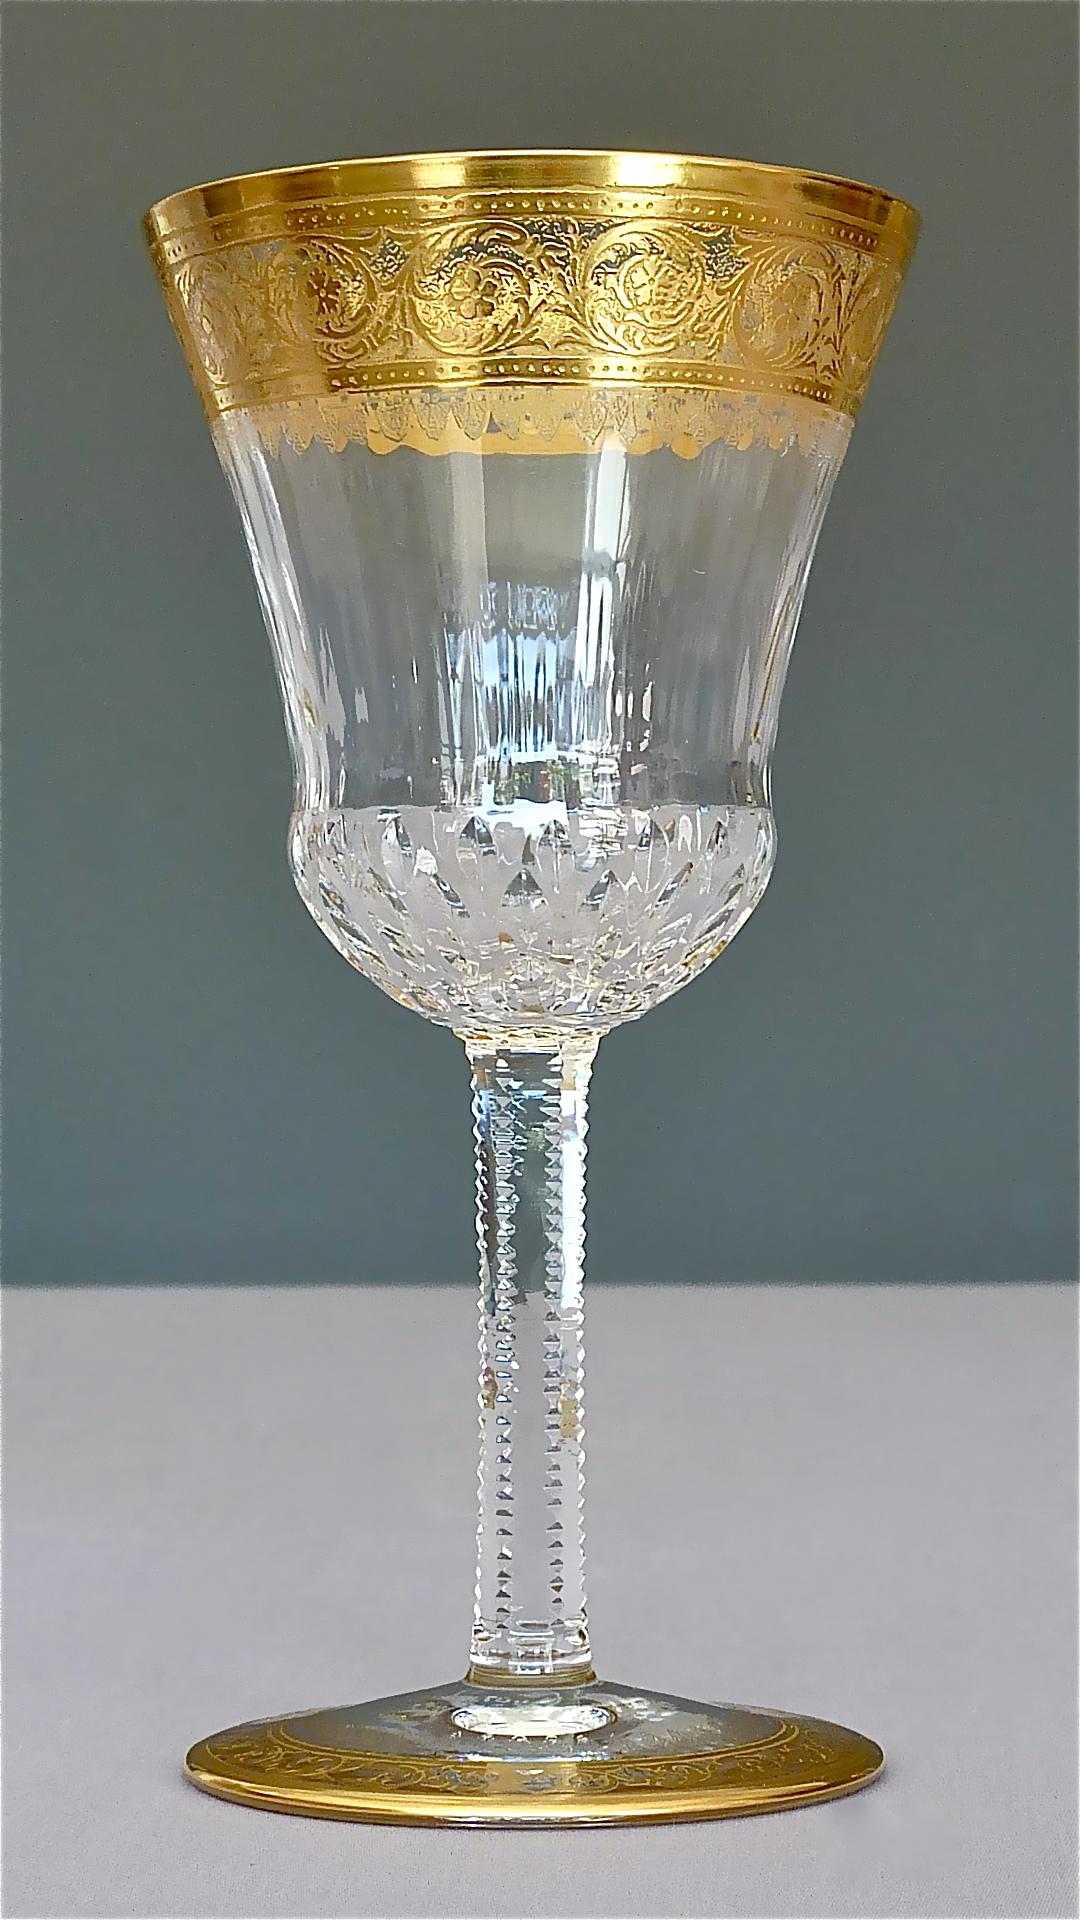 24 Saint Louis-Wassergläser aus vergoldetem Kristall, Champagner, Rot, Weiß und Weiß, Distel, 1950er Jahre (Mitte des 20. Jahrhunderts)